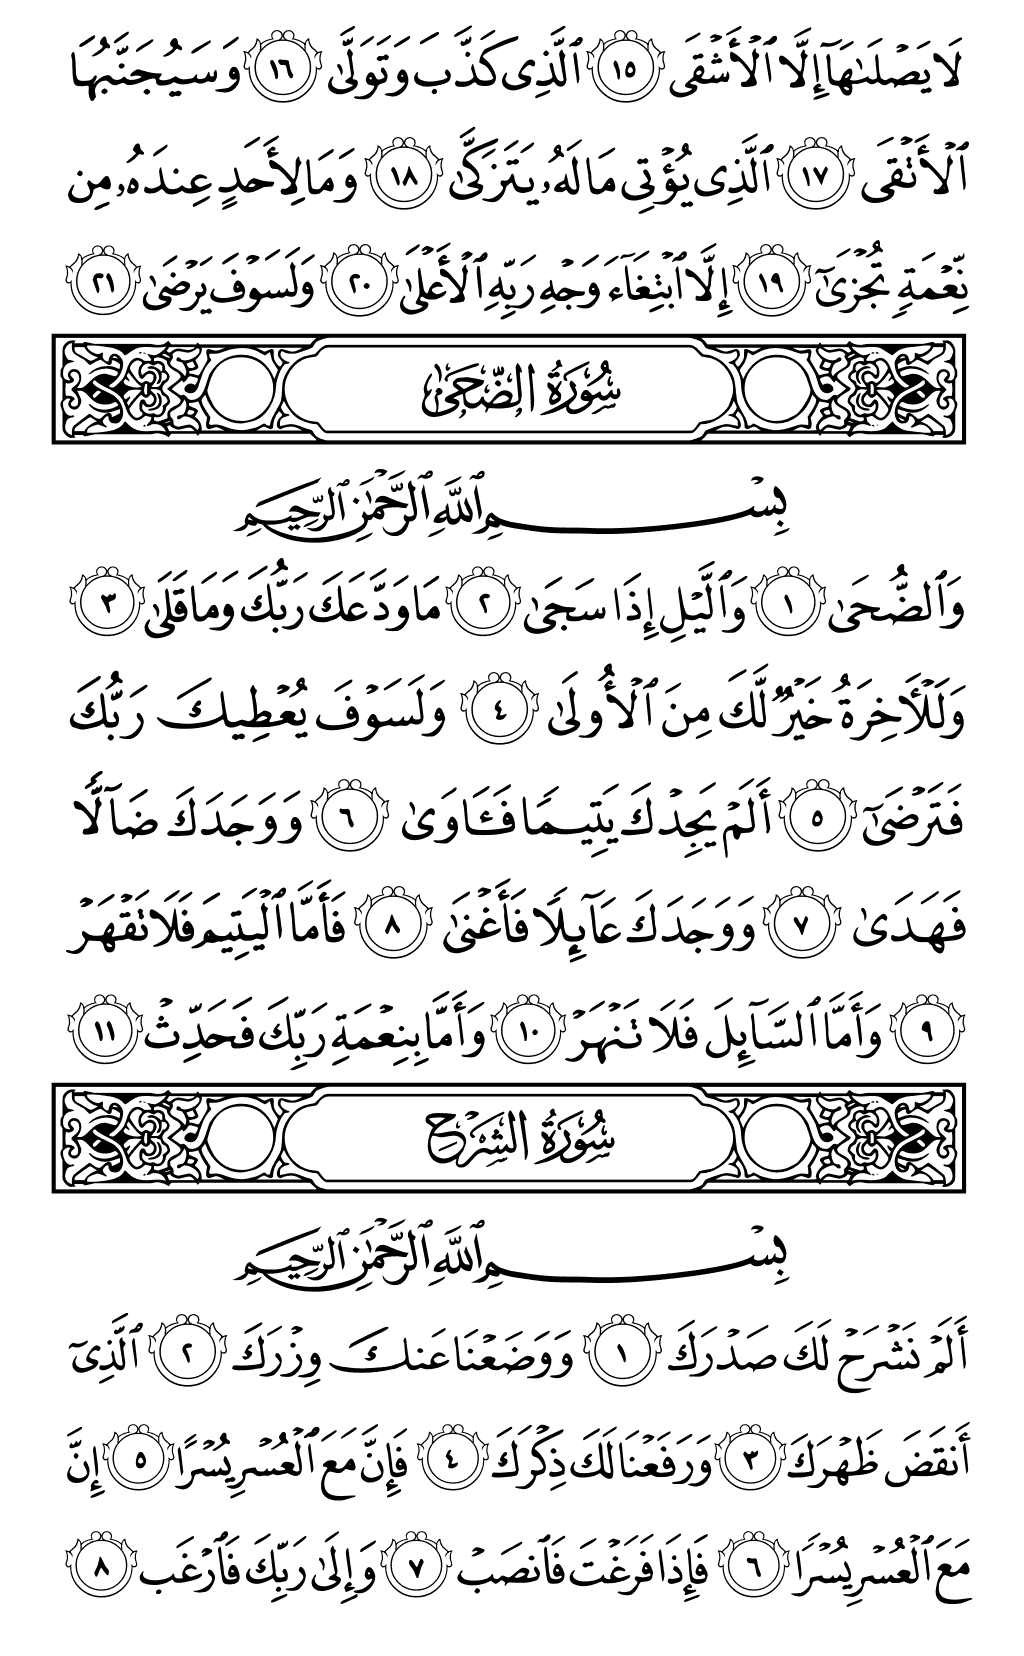 الصفحة رقم 596 من القرآن الكريم